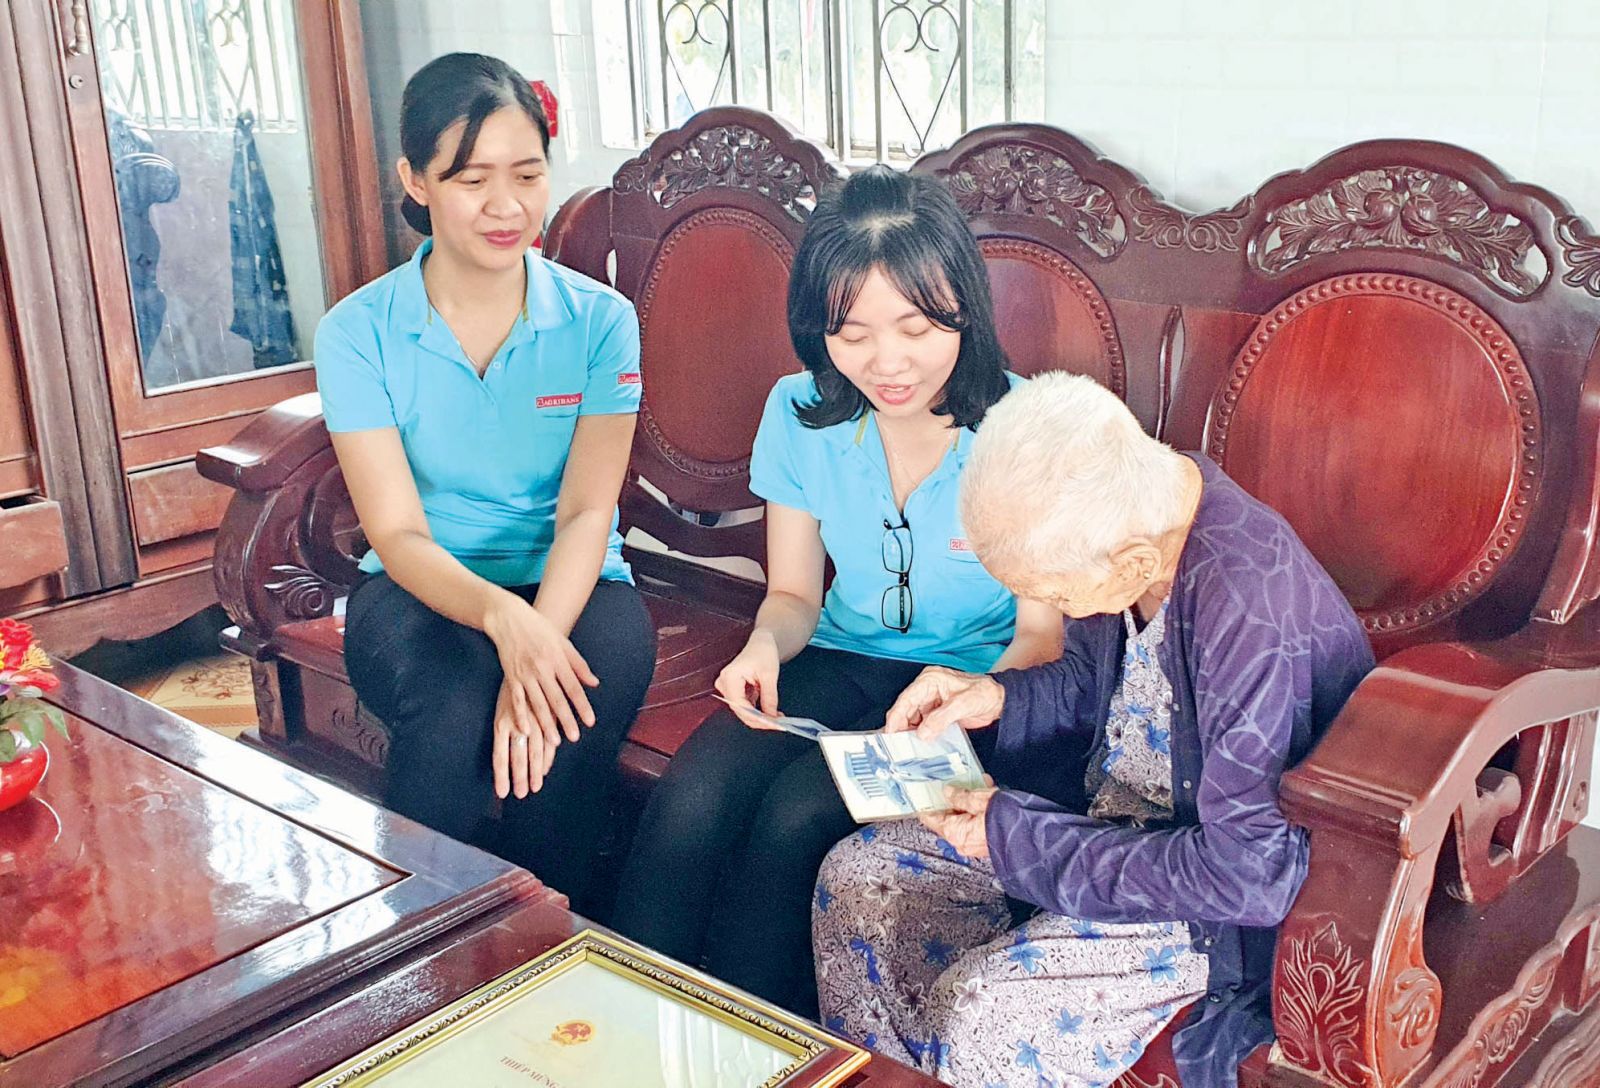 Đoàn cơ sở Agribank quan tâm tổ chức các hoạt động thăm hỏi, phụng dưỡng Mẹ Việt Nam Anh hùng ở huyện Châu Thành hàng quí và những ngày lễ lớn